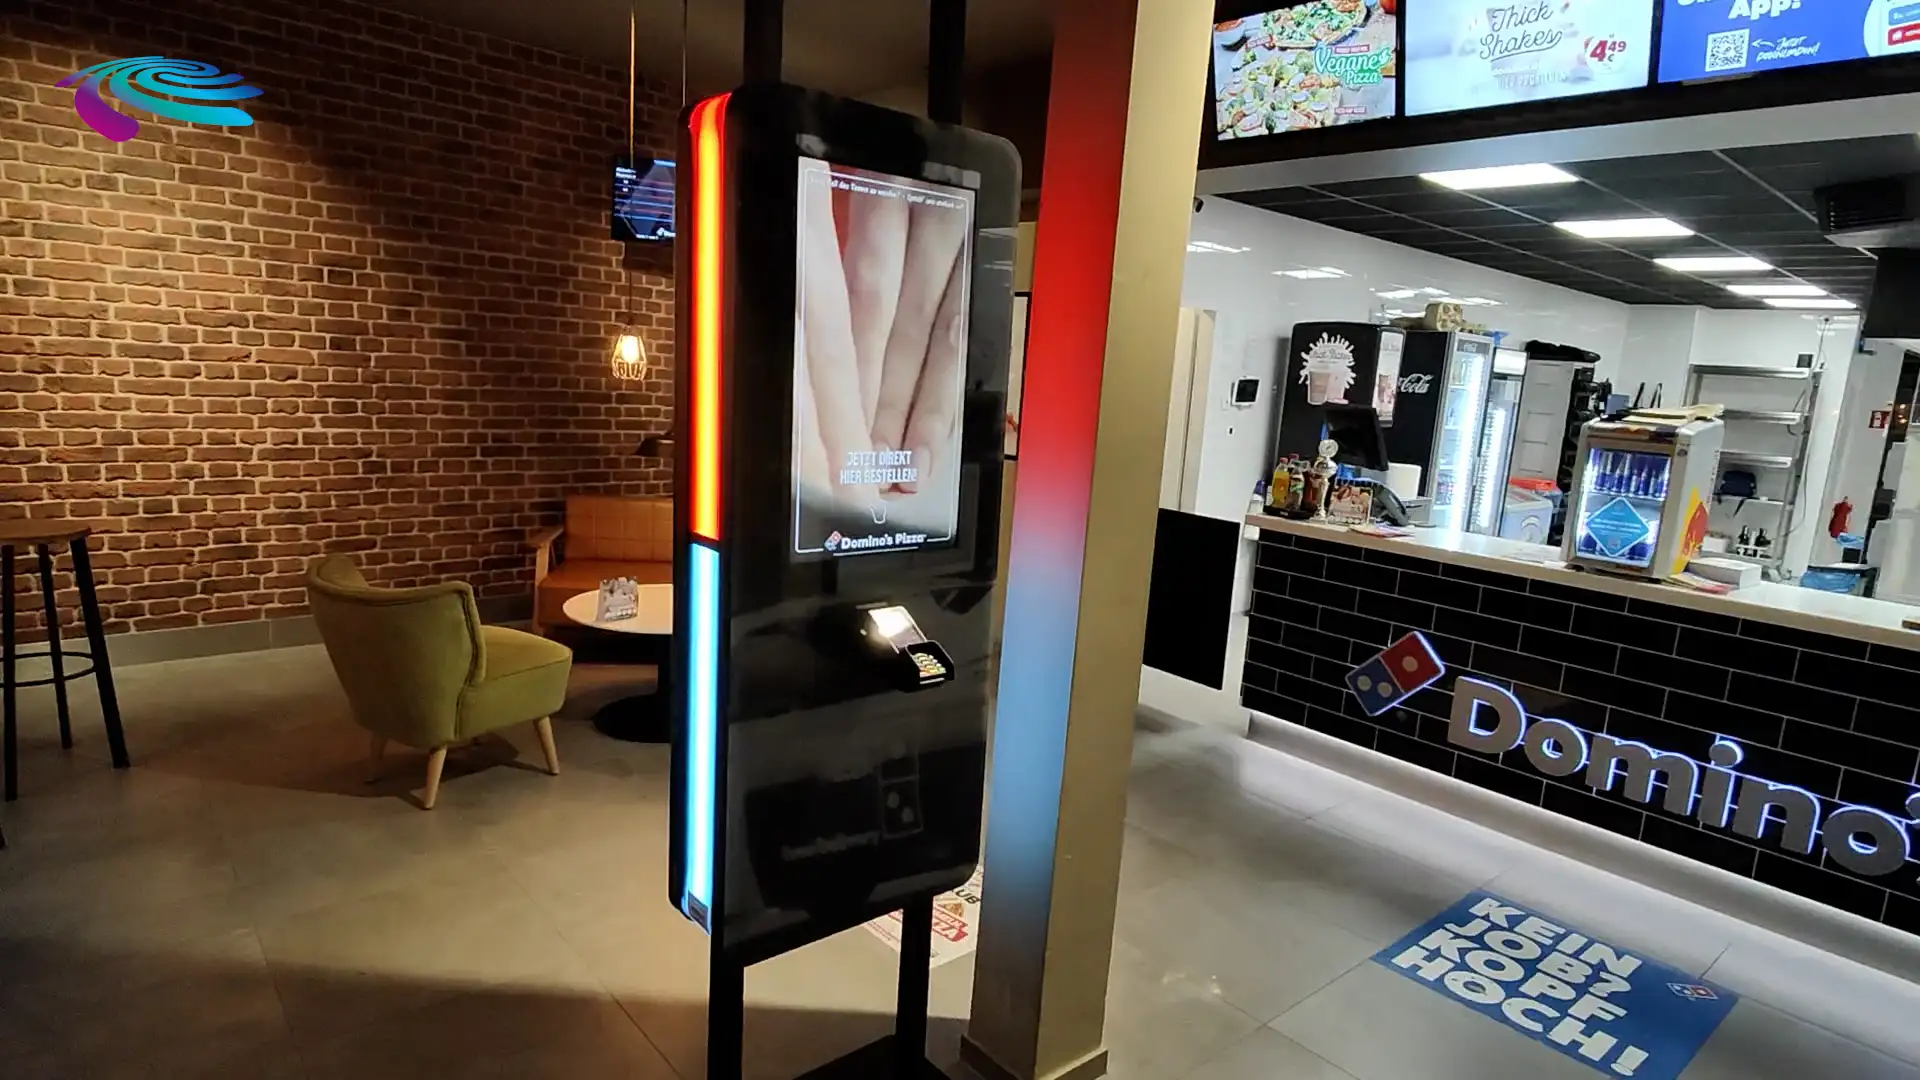 Prestop Self-Service Kiosk Domino's Pizza installatievideo